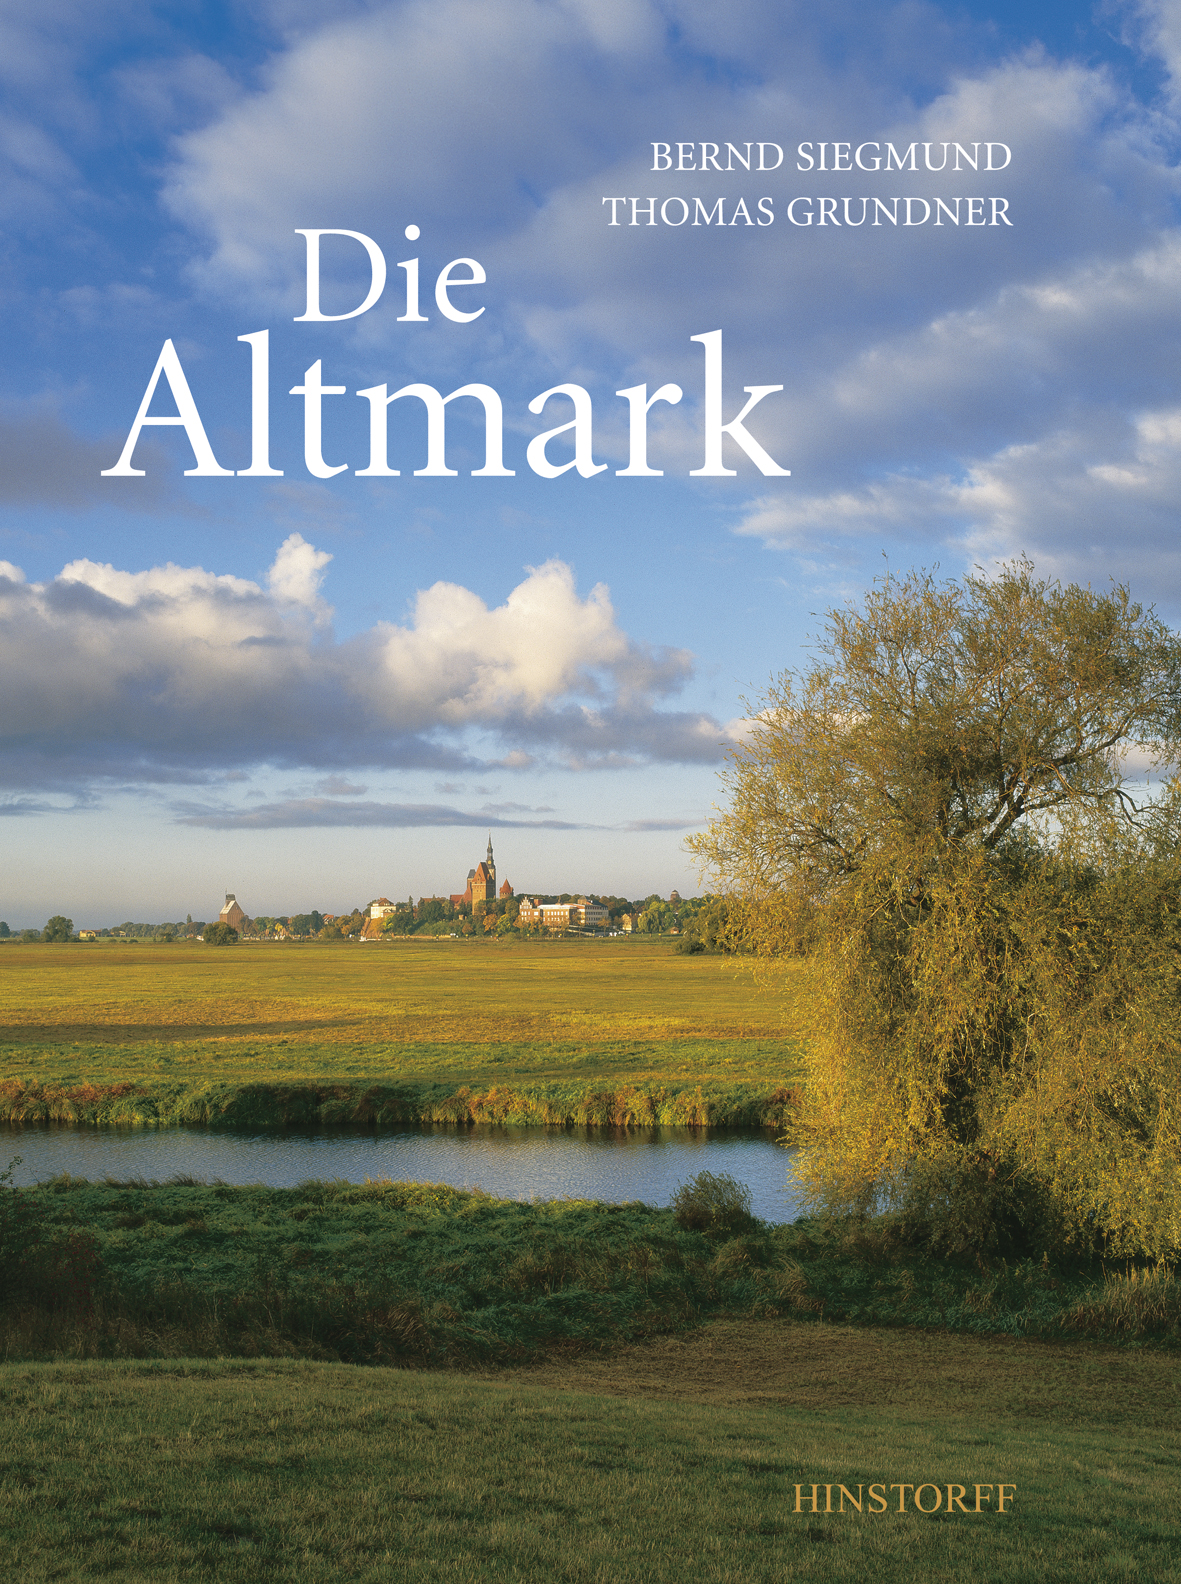 Die Altmark, Bernd Siegmund - Bild 1 von 1